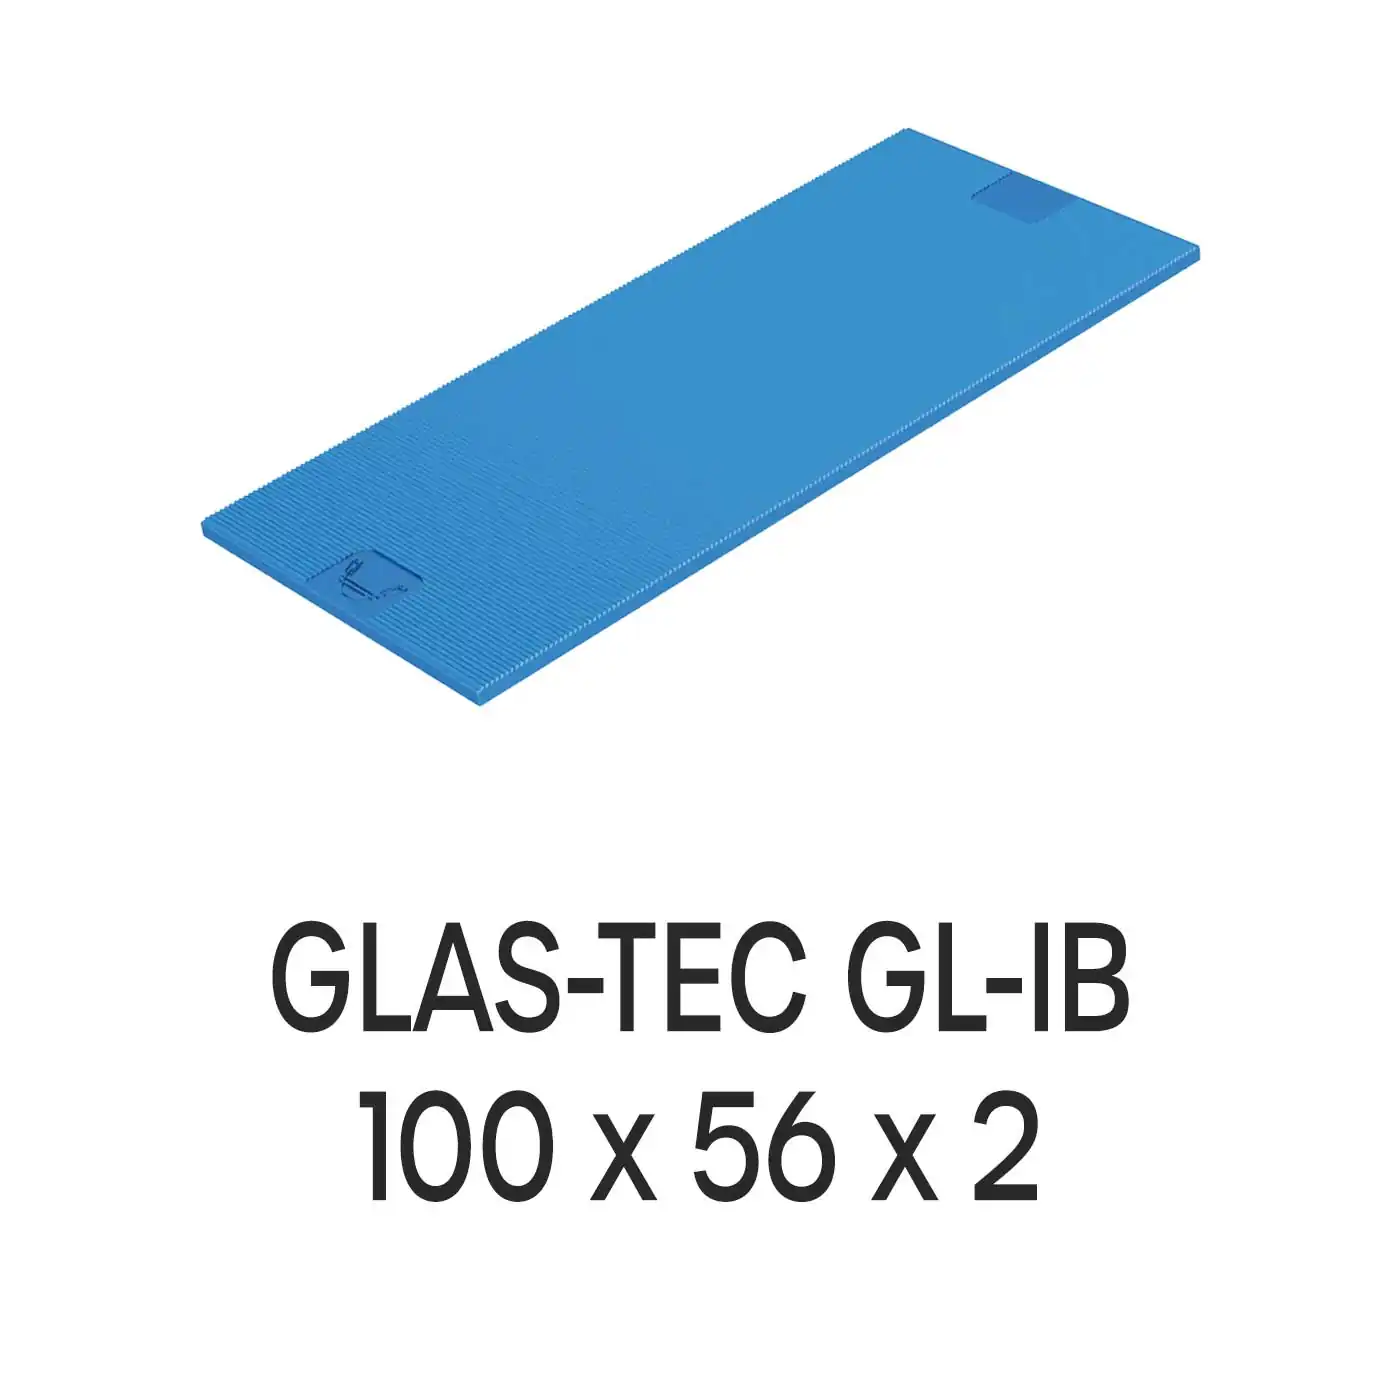 Roto Verglasungsklotz GLAS-TEC GL-IB, 100 x 56 x 2 mm, schwarz, 500 Stück